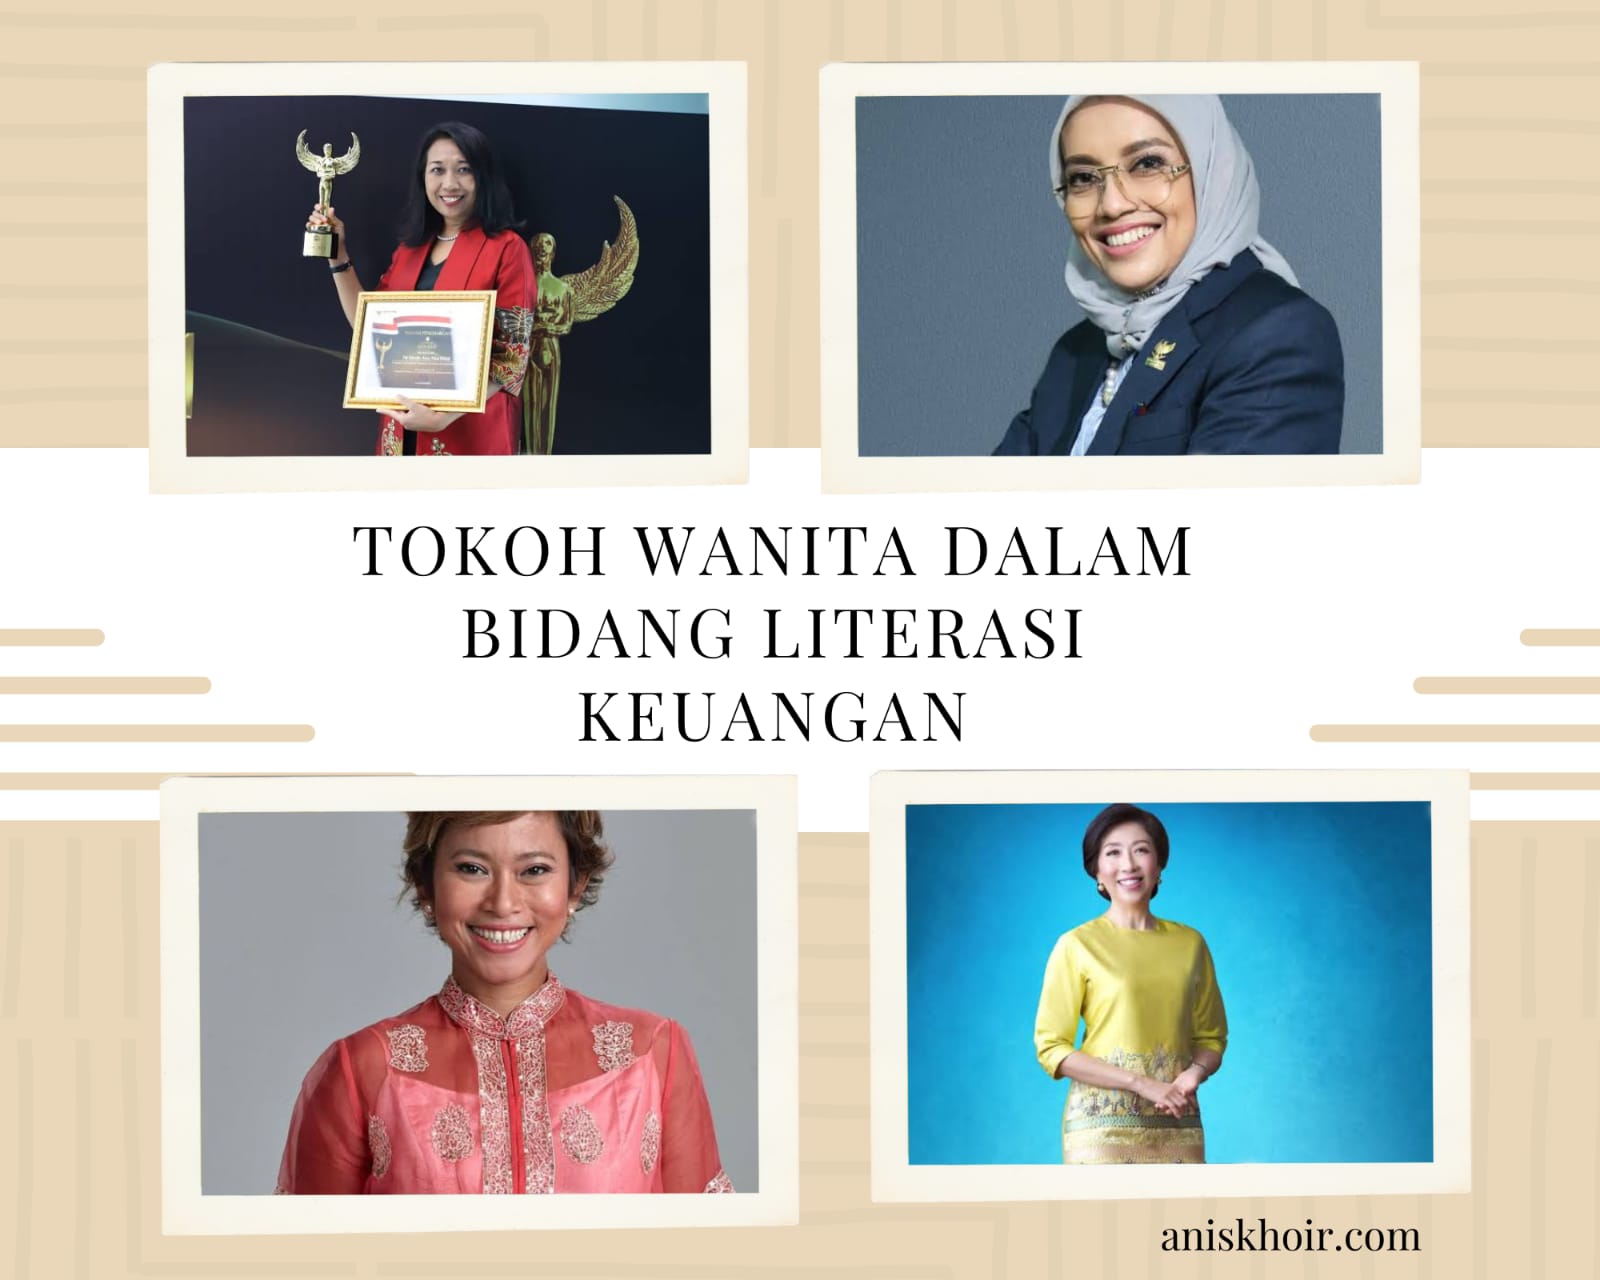 Tokoh Literasi keuangan di Indonesia